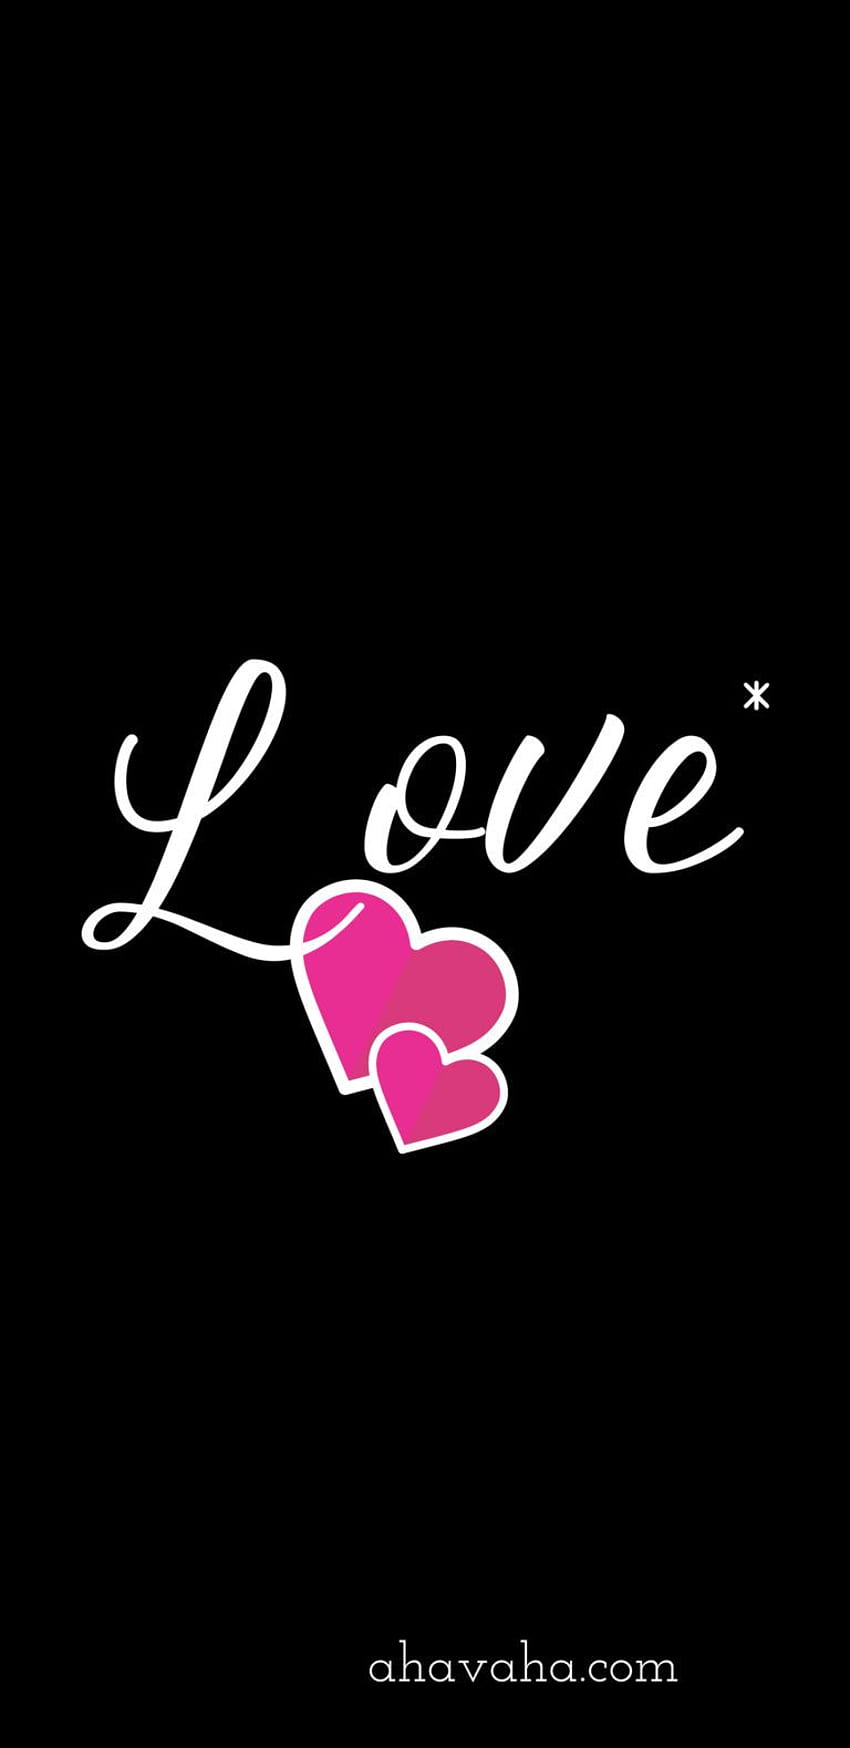 Love Hearts Star Pink White Themed Christian e Screensaver Mobile Phone Black Background 3. cristão, cristão, cristão Papel de parede de celular HD